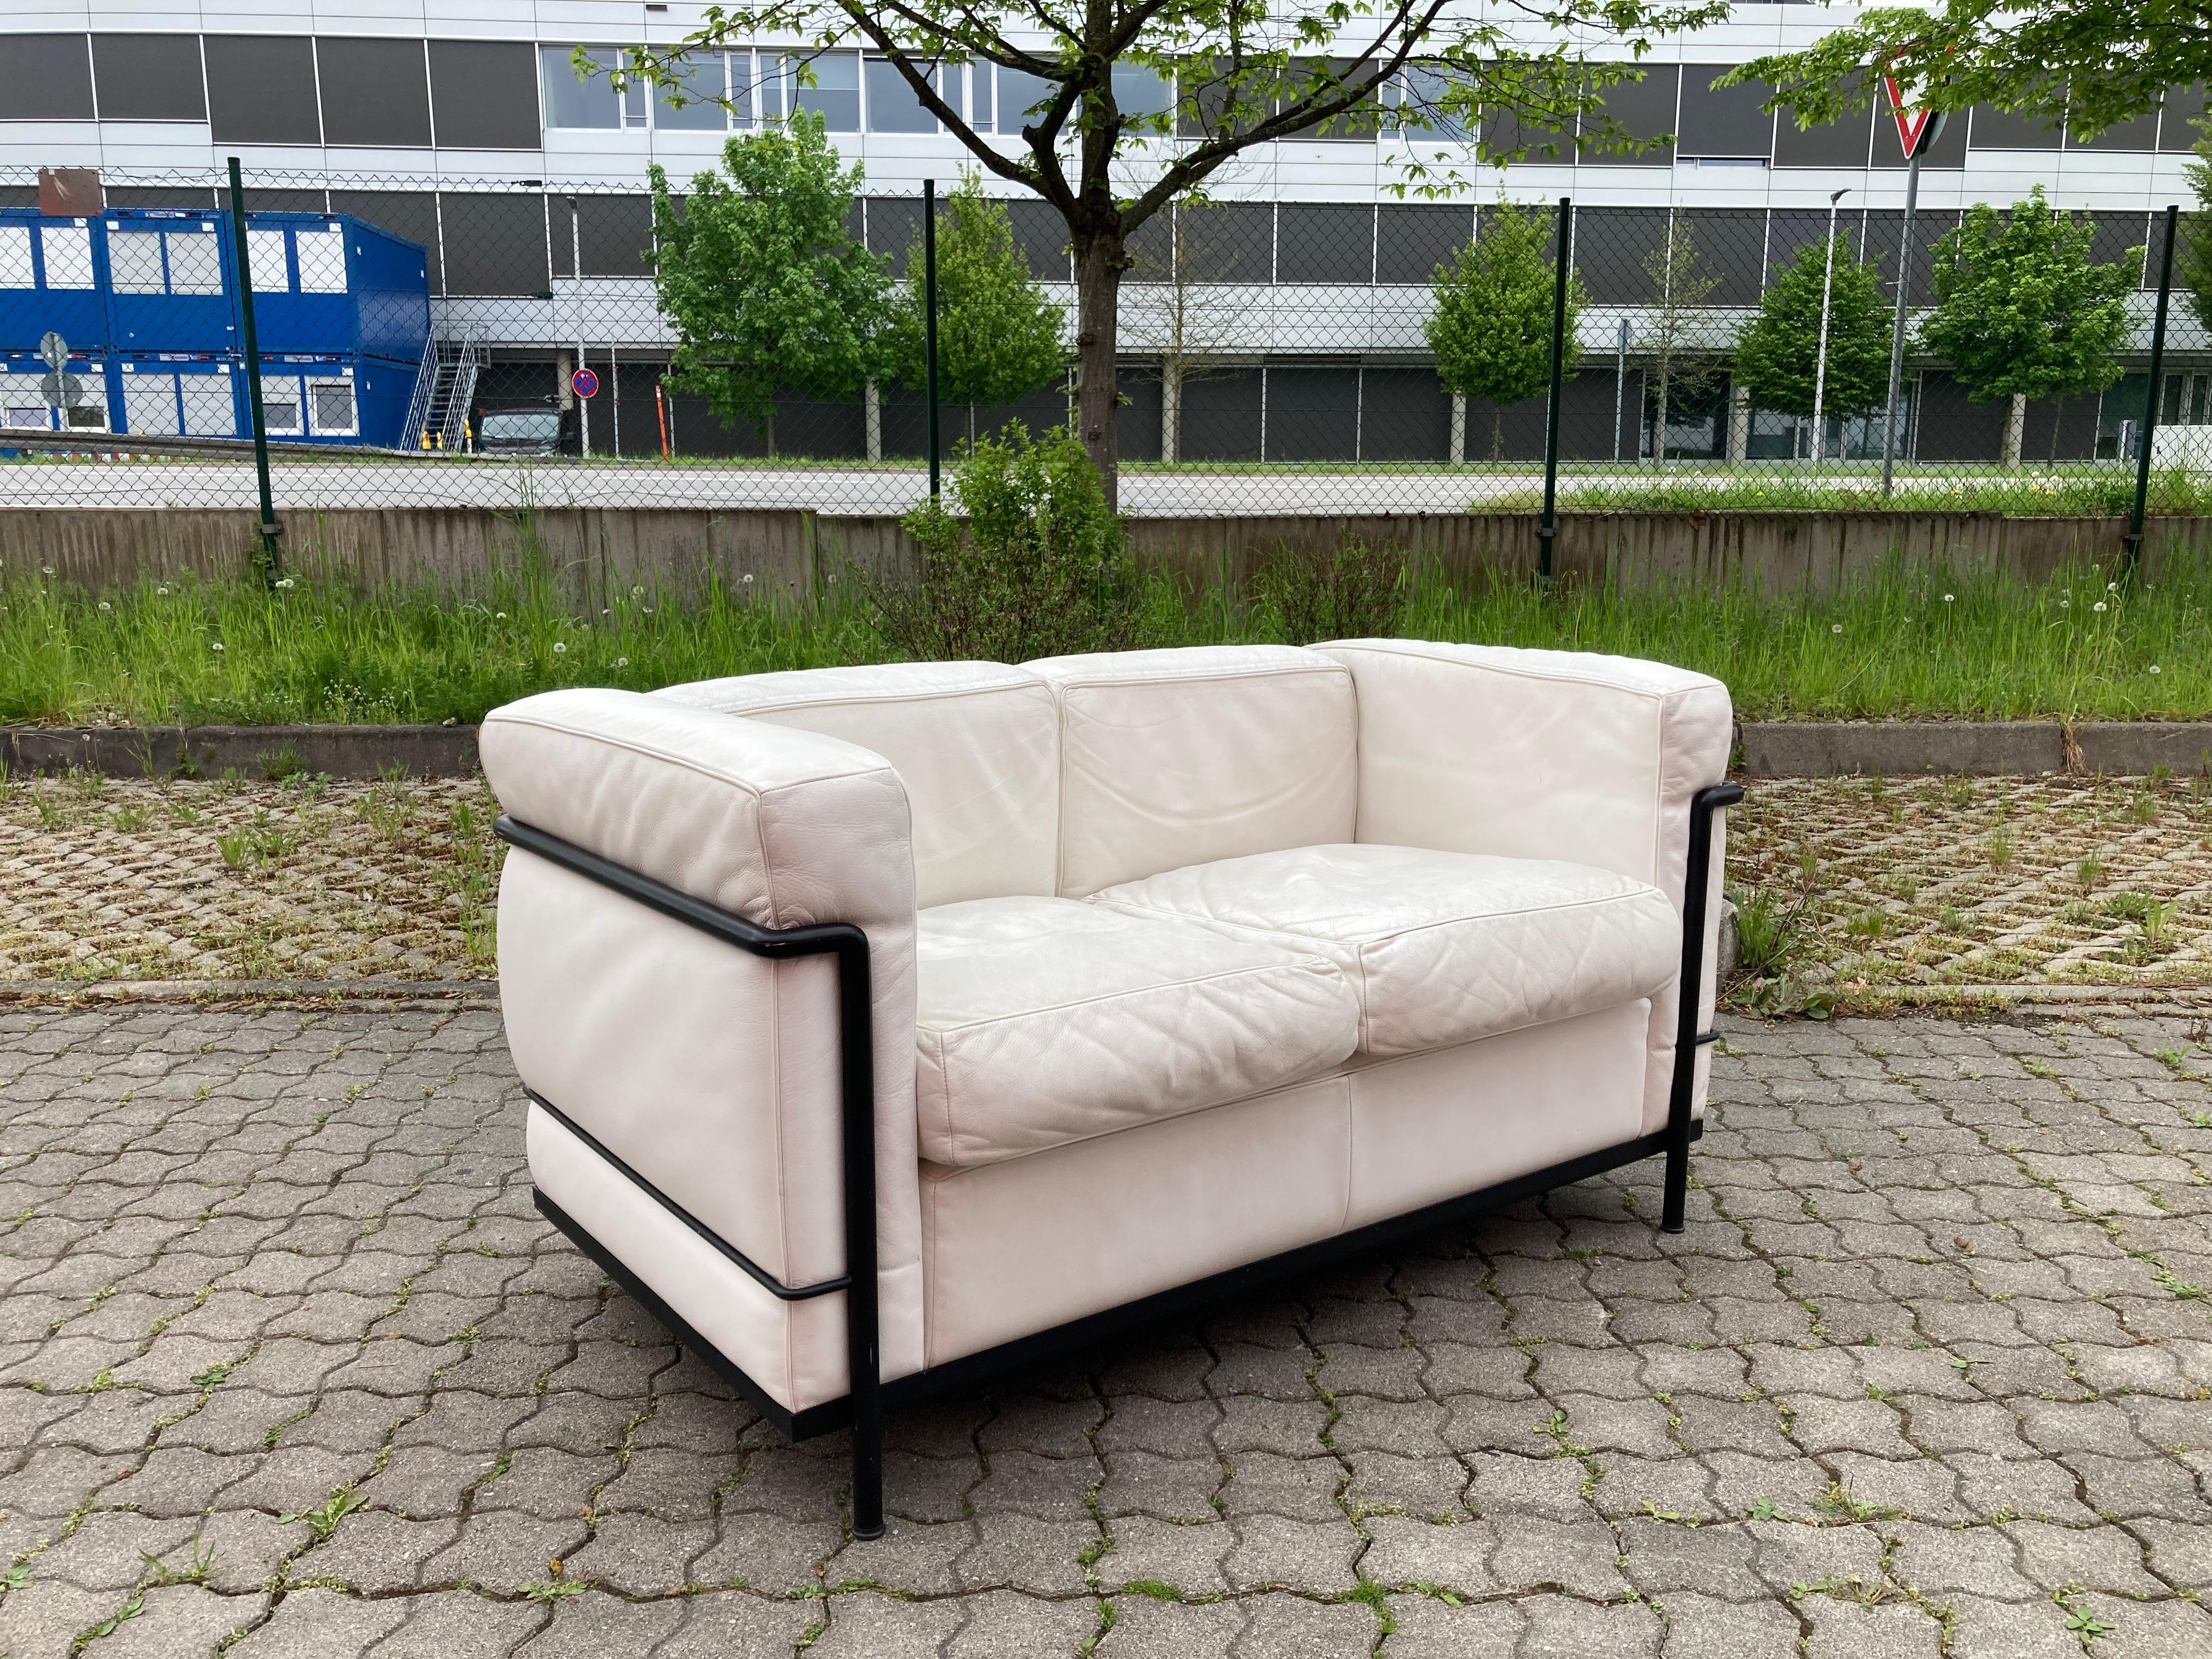 Dieses LC2 Zweisitzer-Sofa aus weißem Leder wurde von Le Corbusier entworfen und von Cassina hergestellt.
Er verfügt über einen schwarz gefärbten Stahlrohrrahmen. 
Das Leder hat etwas Patina.
Einige Spuren auf dem Rohrrahmen.
Ein klassisches,